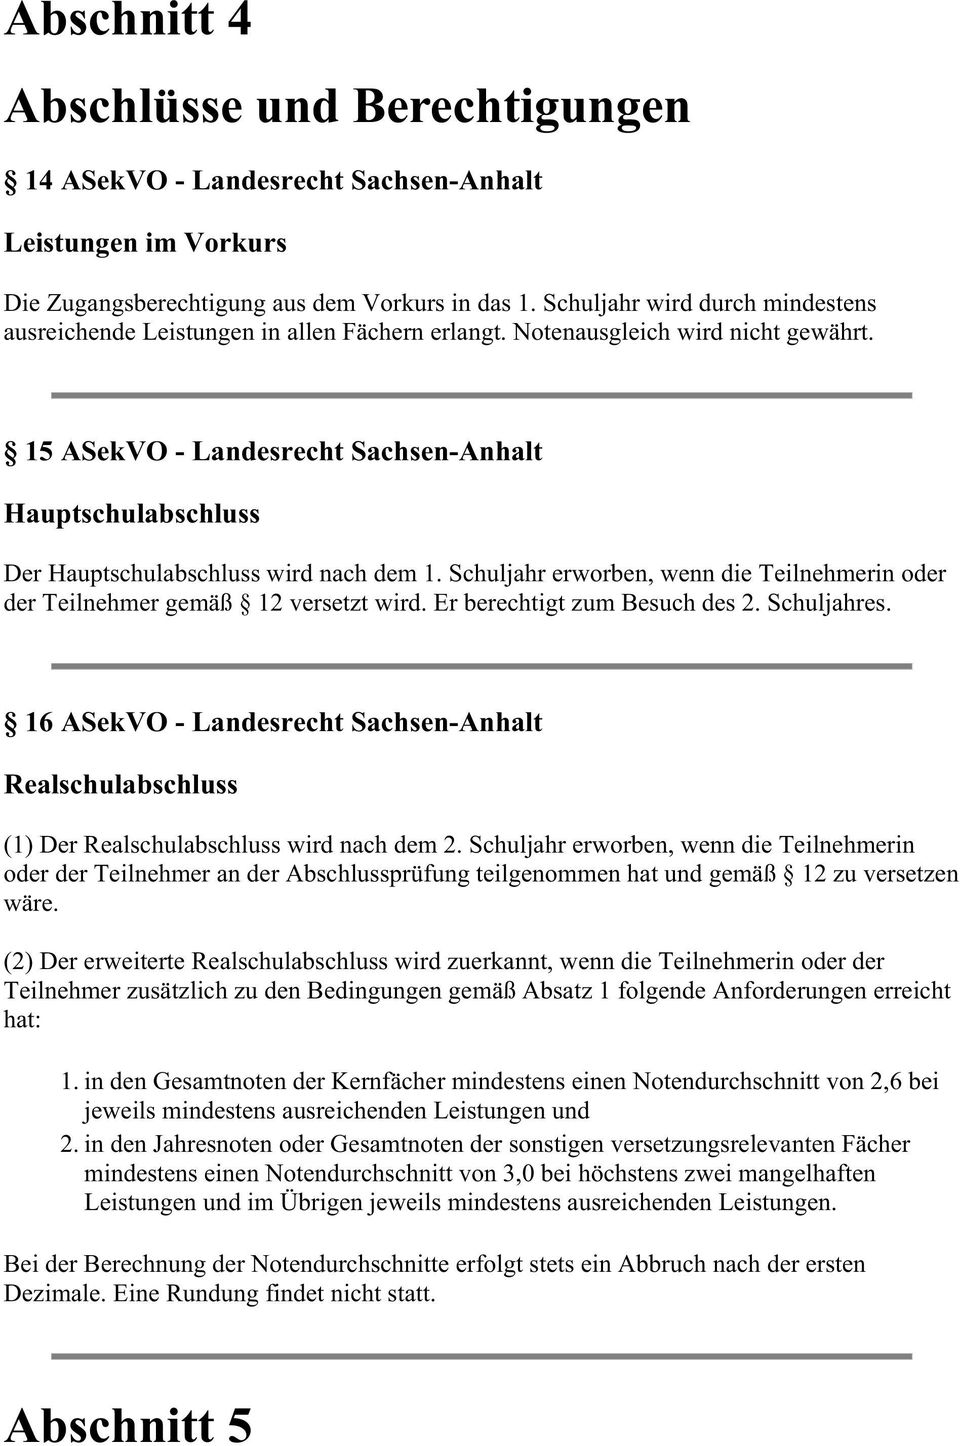 15 ASekVO - Landesrecht Sachsen-Anhalt Hauptschulabschluss Der Hauptschulabschluss wird nach dem 1. Schuljahr erworben, wenn die Teilnehmerin oder der Teilnehmer gemäß 12 versetzt wird.